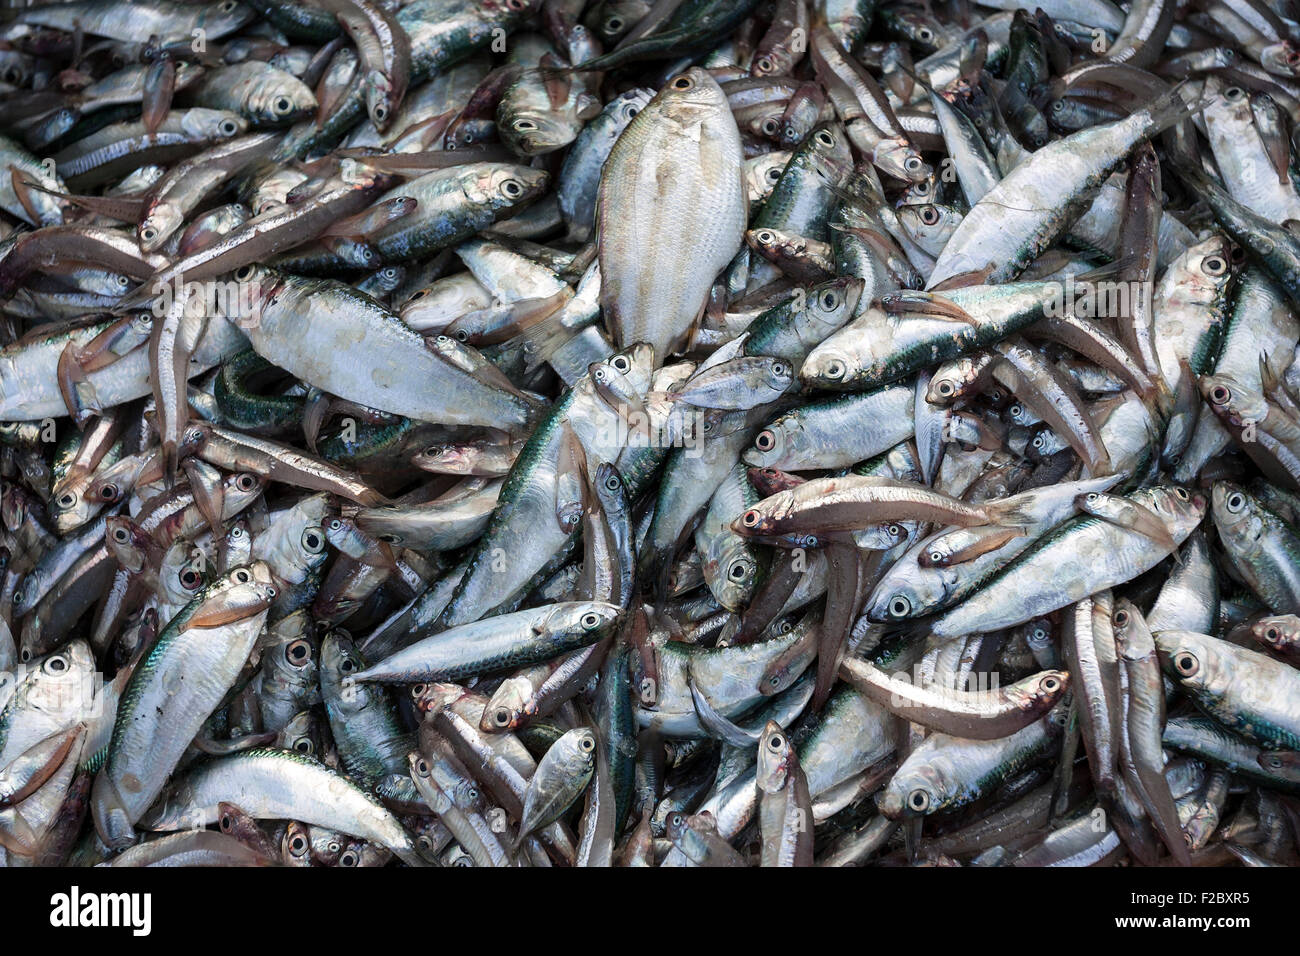 Freshly caught fish, fishing village of Ngapali, Thandwe, Rakhine State, Myanmar Stock Photo